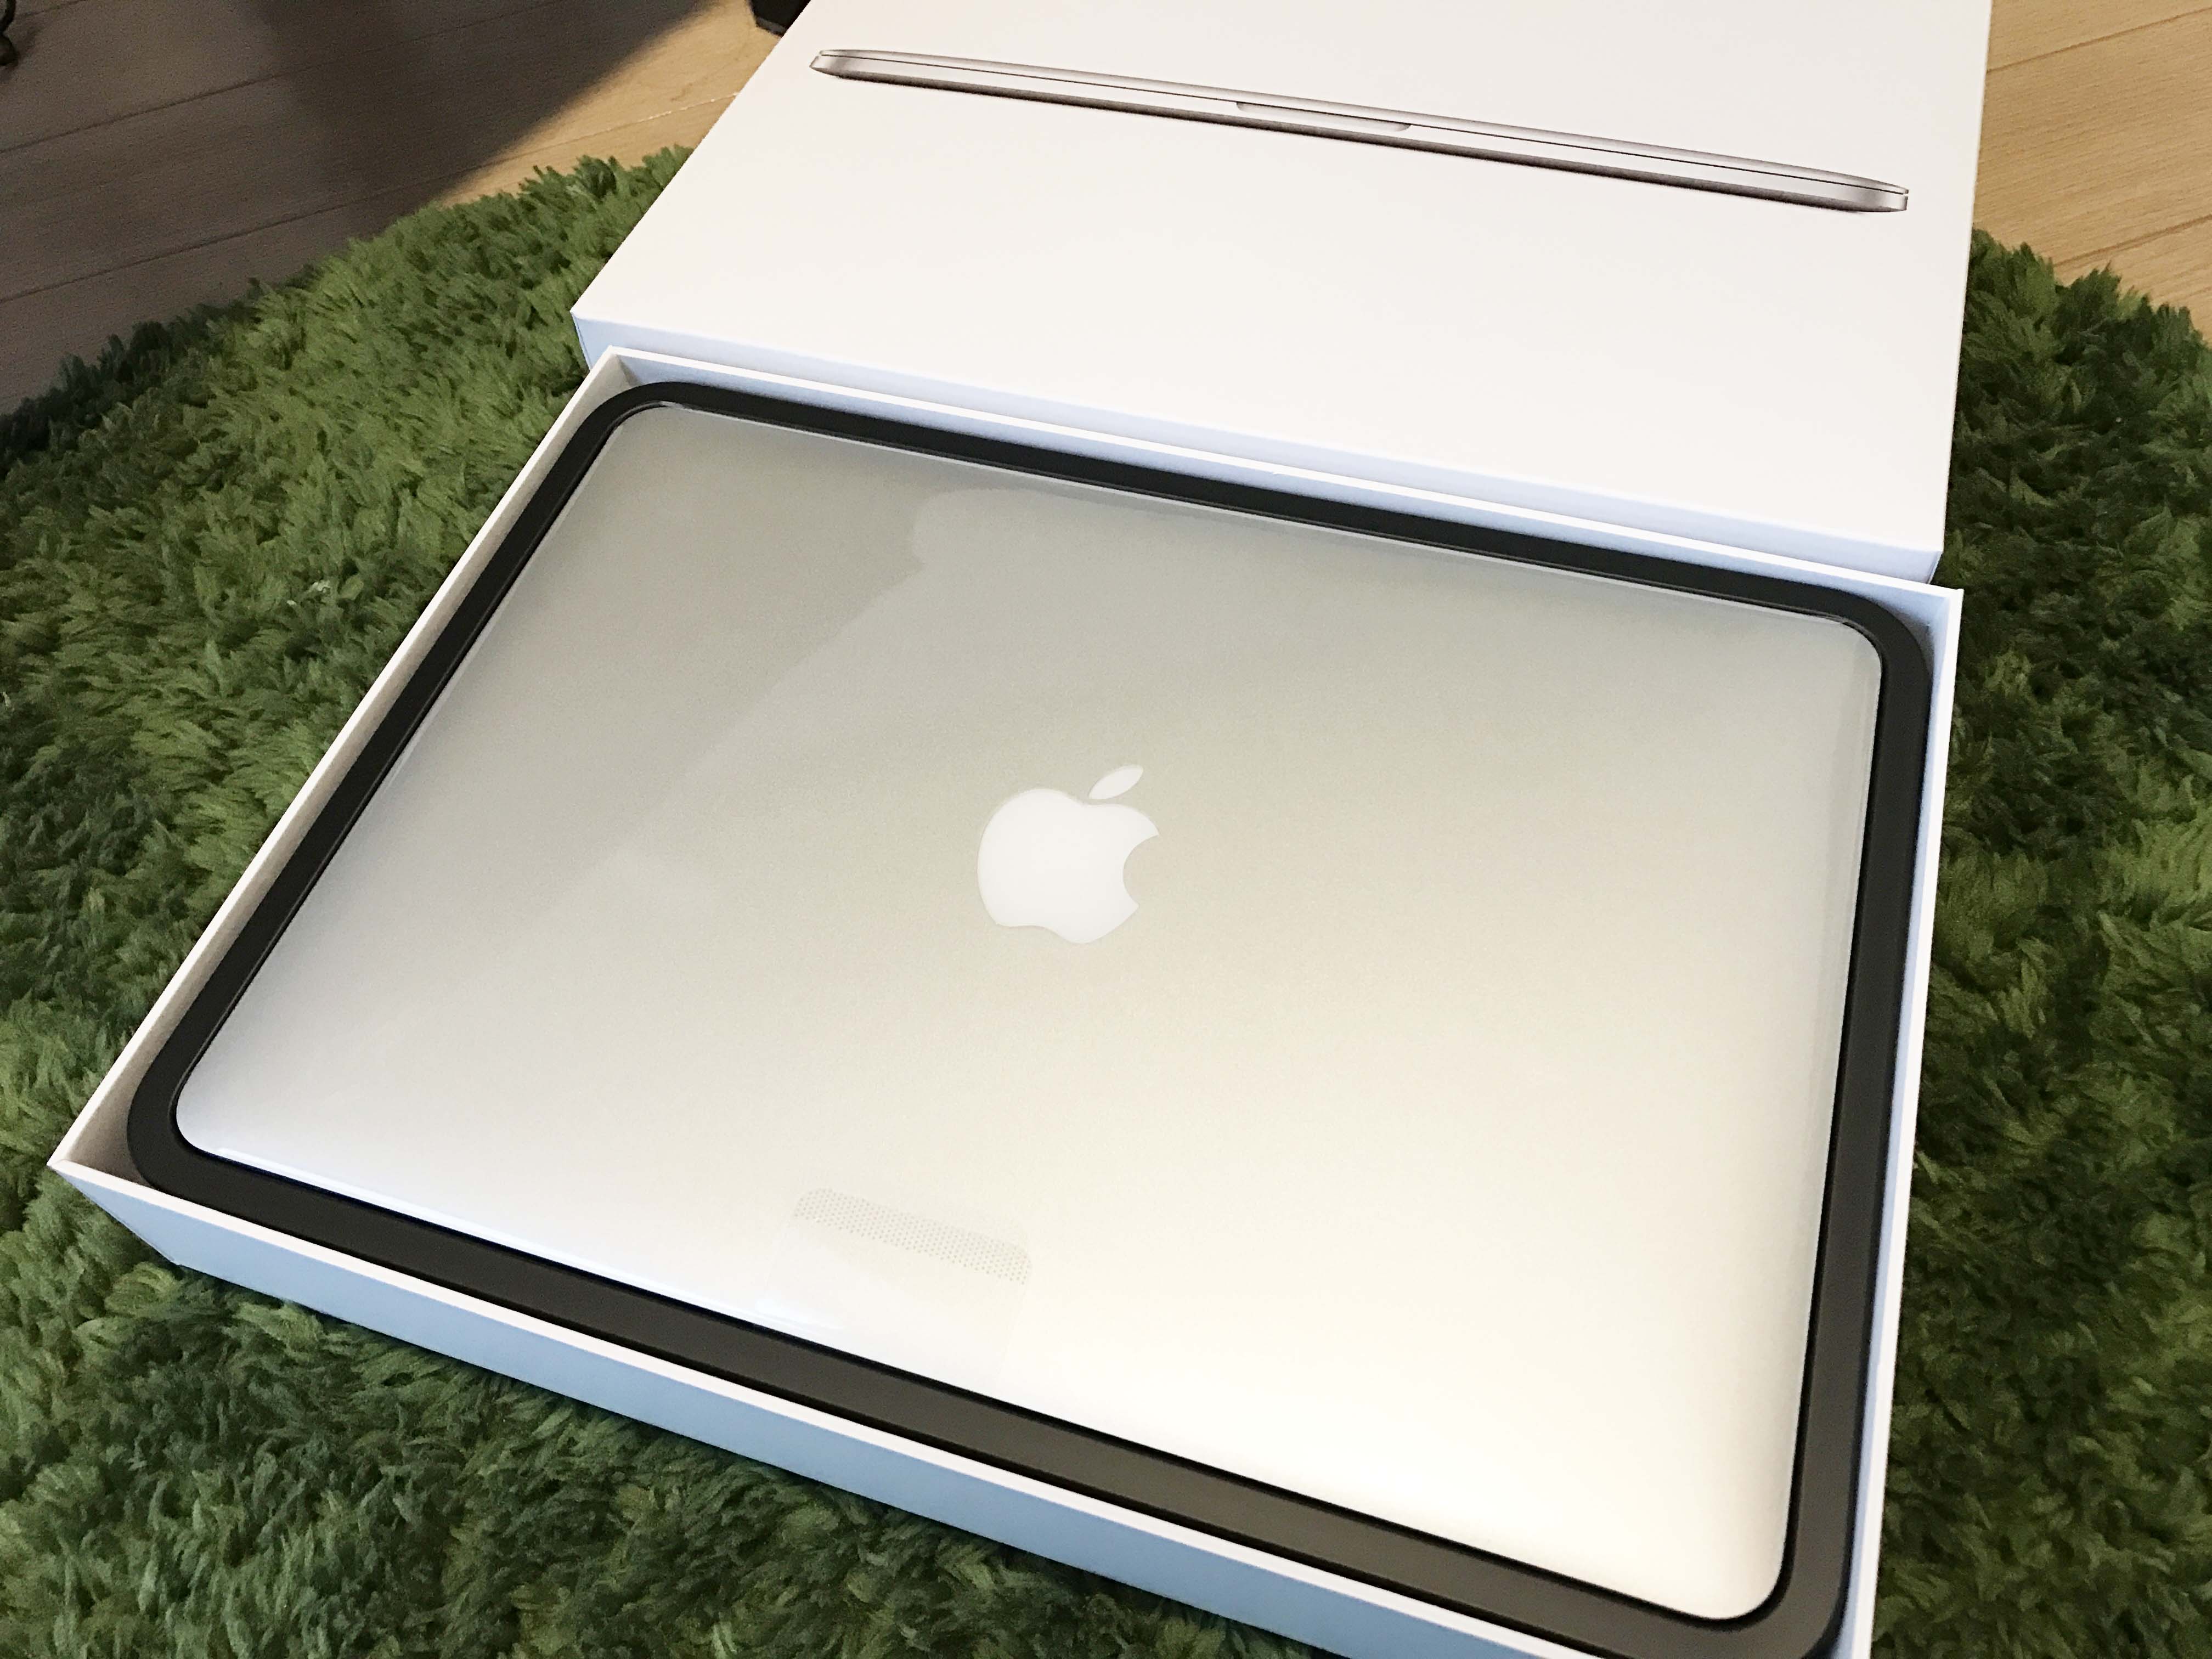 【Apple】MacBook Pro 13インチ MF839J/Aを購入しました。